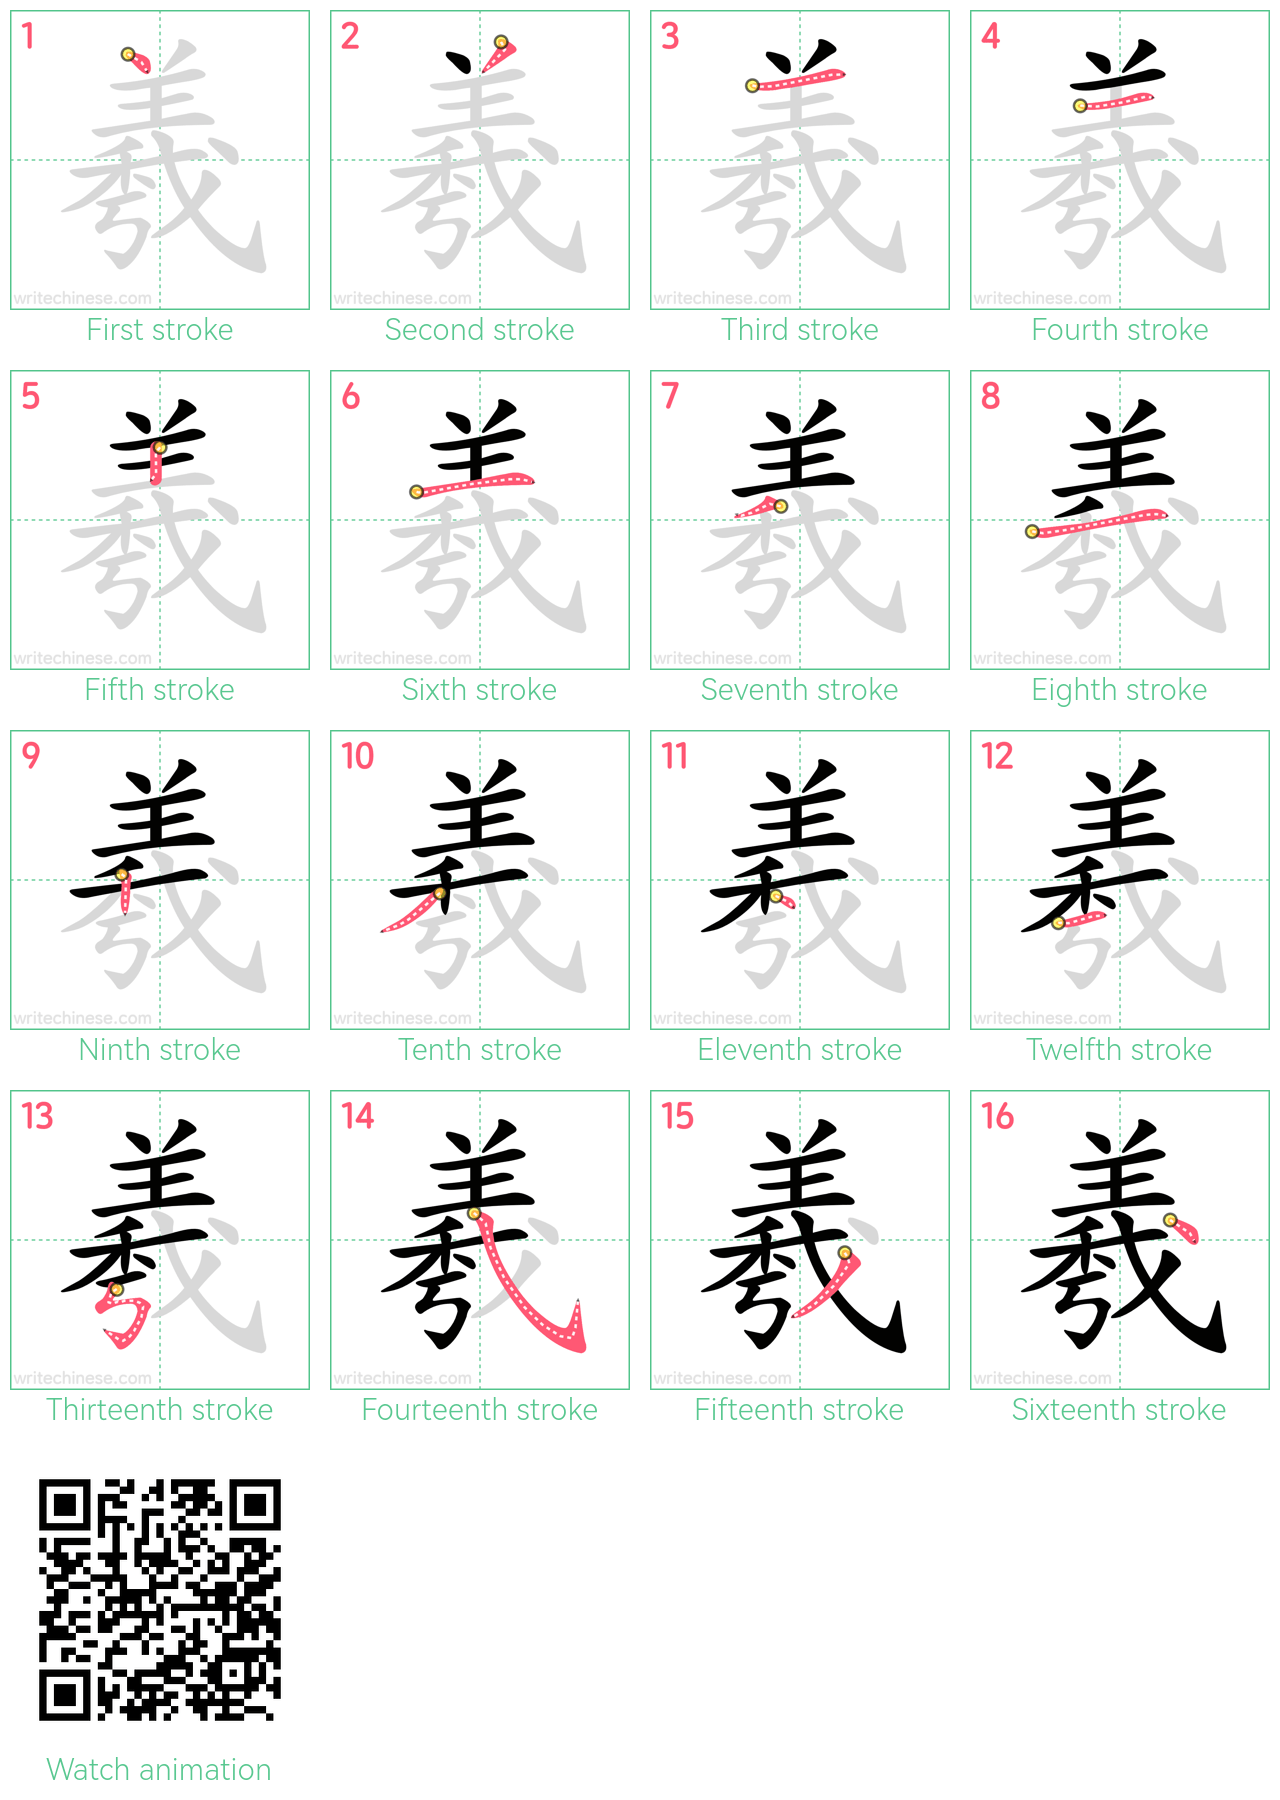 羲 step-by-step stroke order diagrams